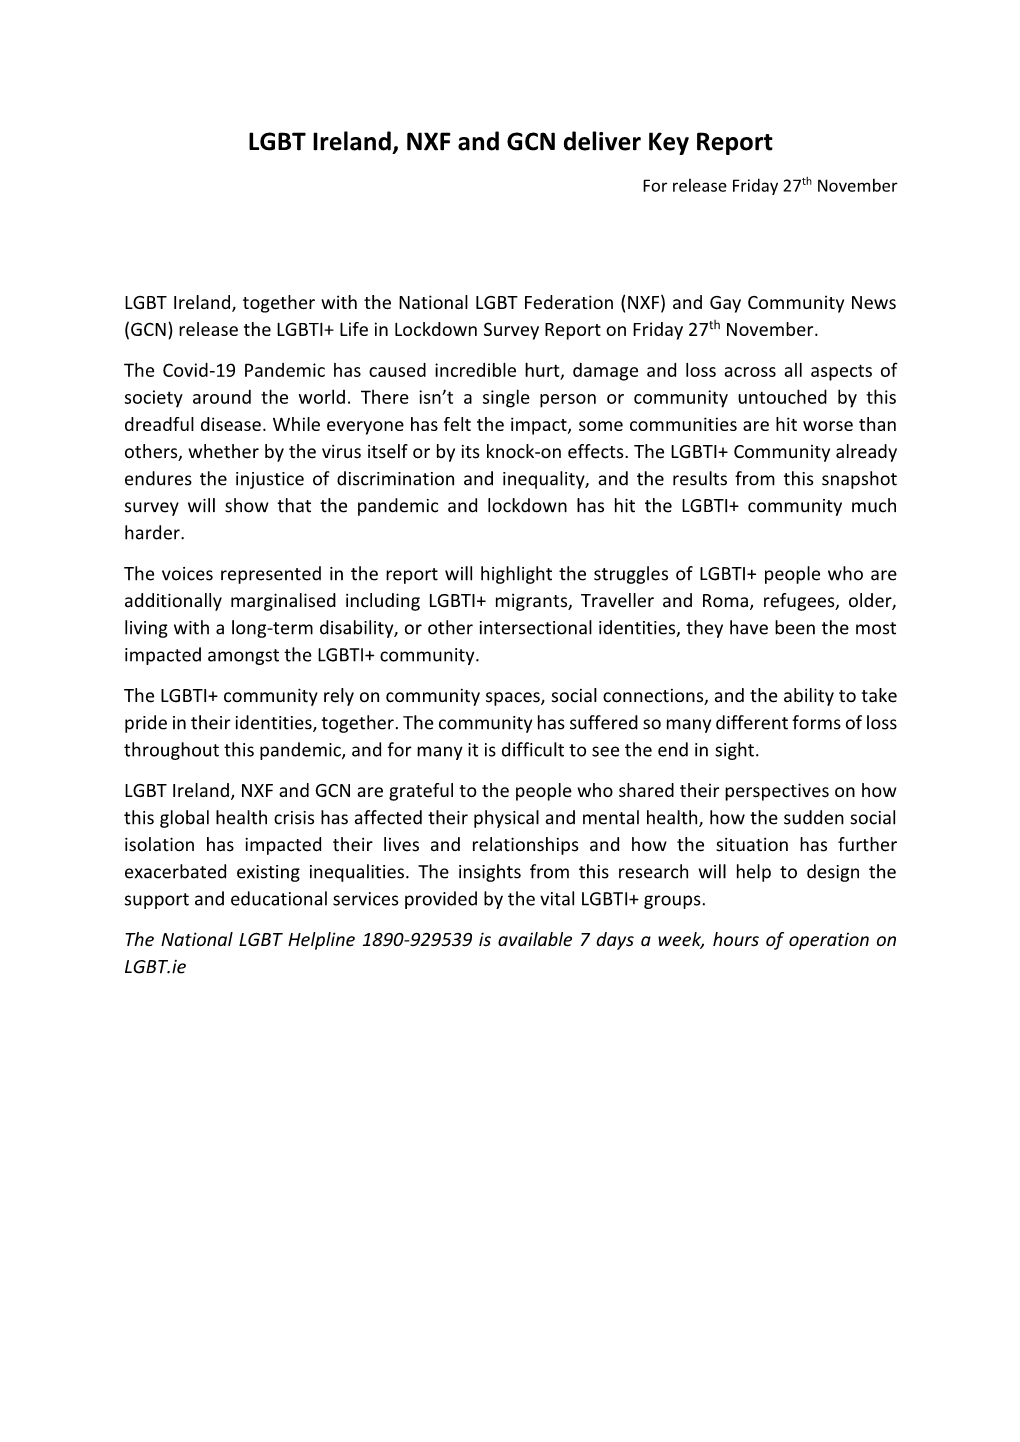 Nov 2020: LGBTI+ Life in Lockdown Press Release